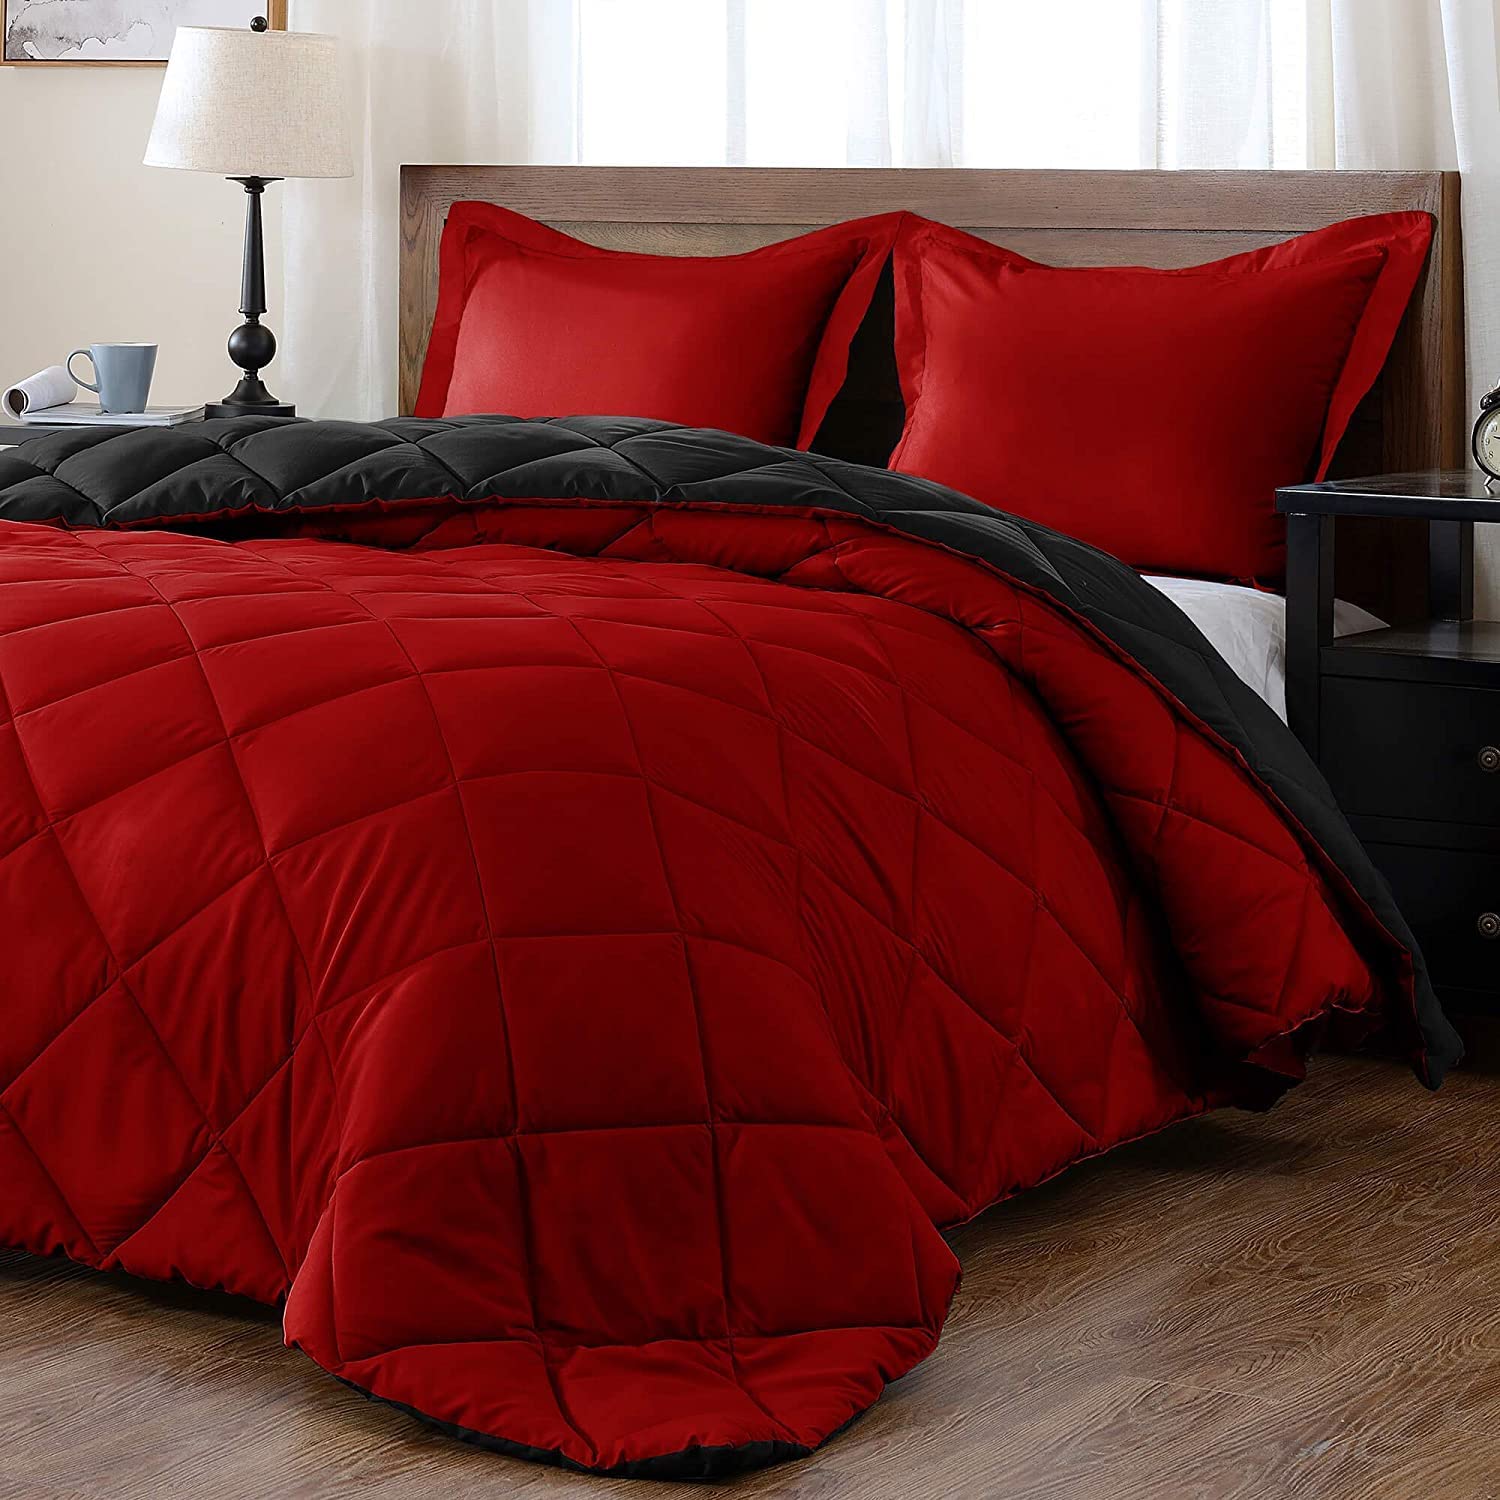 Parsonage Microfiber Reversible 3 Piece Comforter Set Rosalind Wheeler Color: Red, Size: King Comforter + 2 King Shams